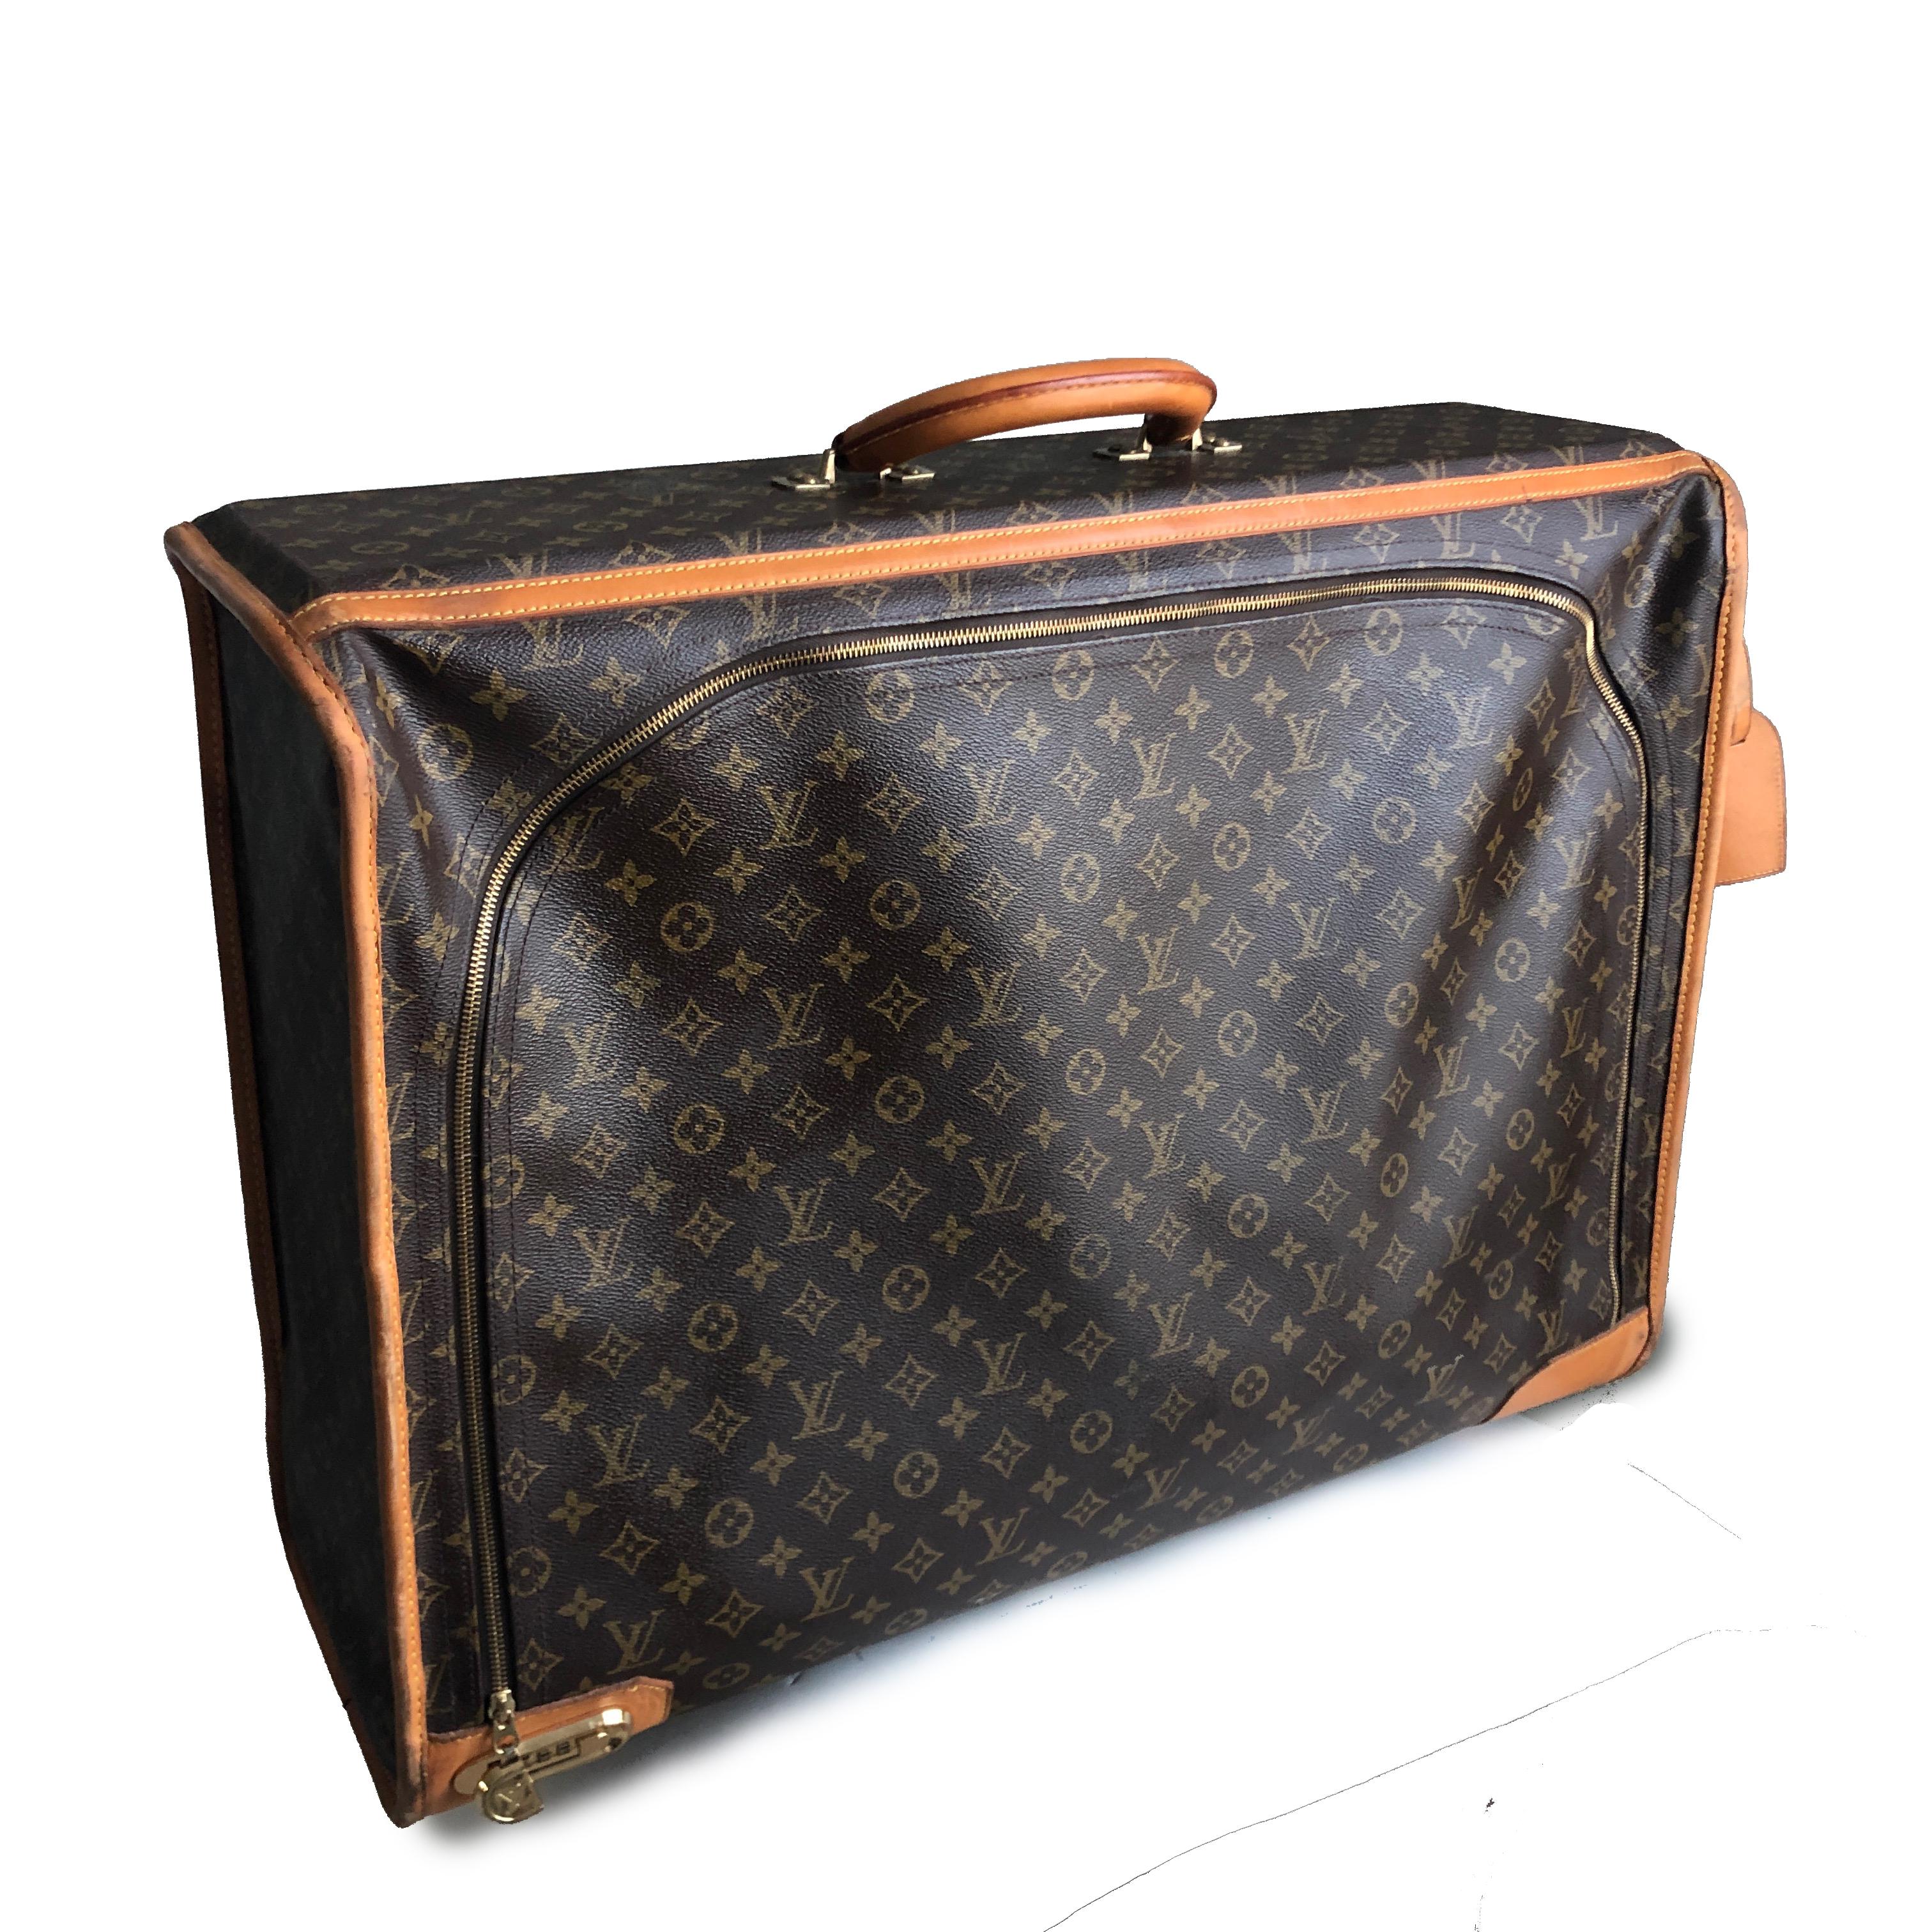 Reisen Sie stilvoll mit Vintage-Gepäck von Louis Vuitton!  Dieser große Koffer aus Canvas mit Monogrammen, der in den 80er Jahren hergestellt wurde, ist mit Vachetta-Leder überzogen und verfügt über ein eingebautes Zahlenschloss und ein